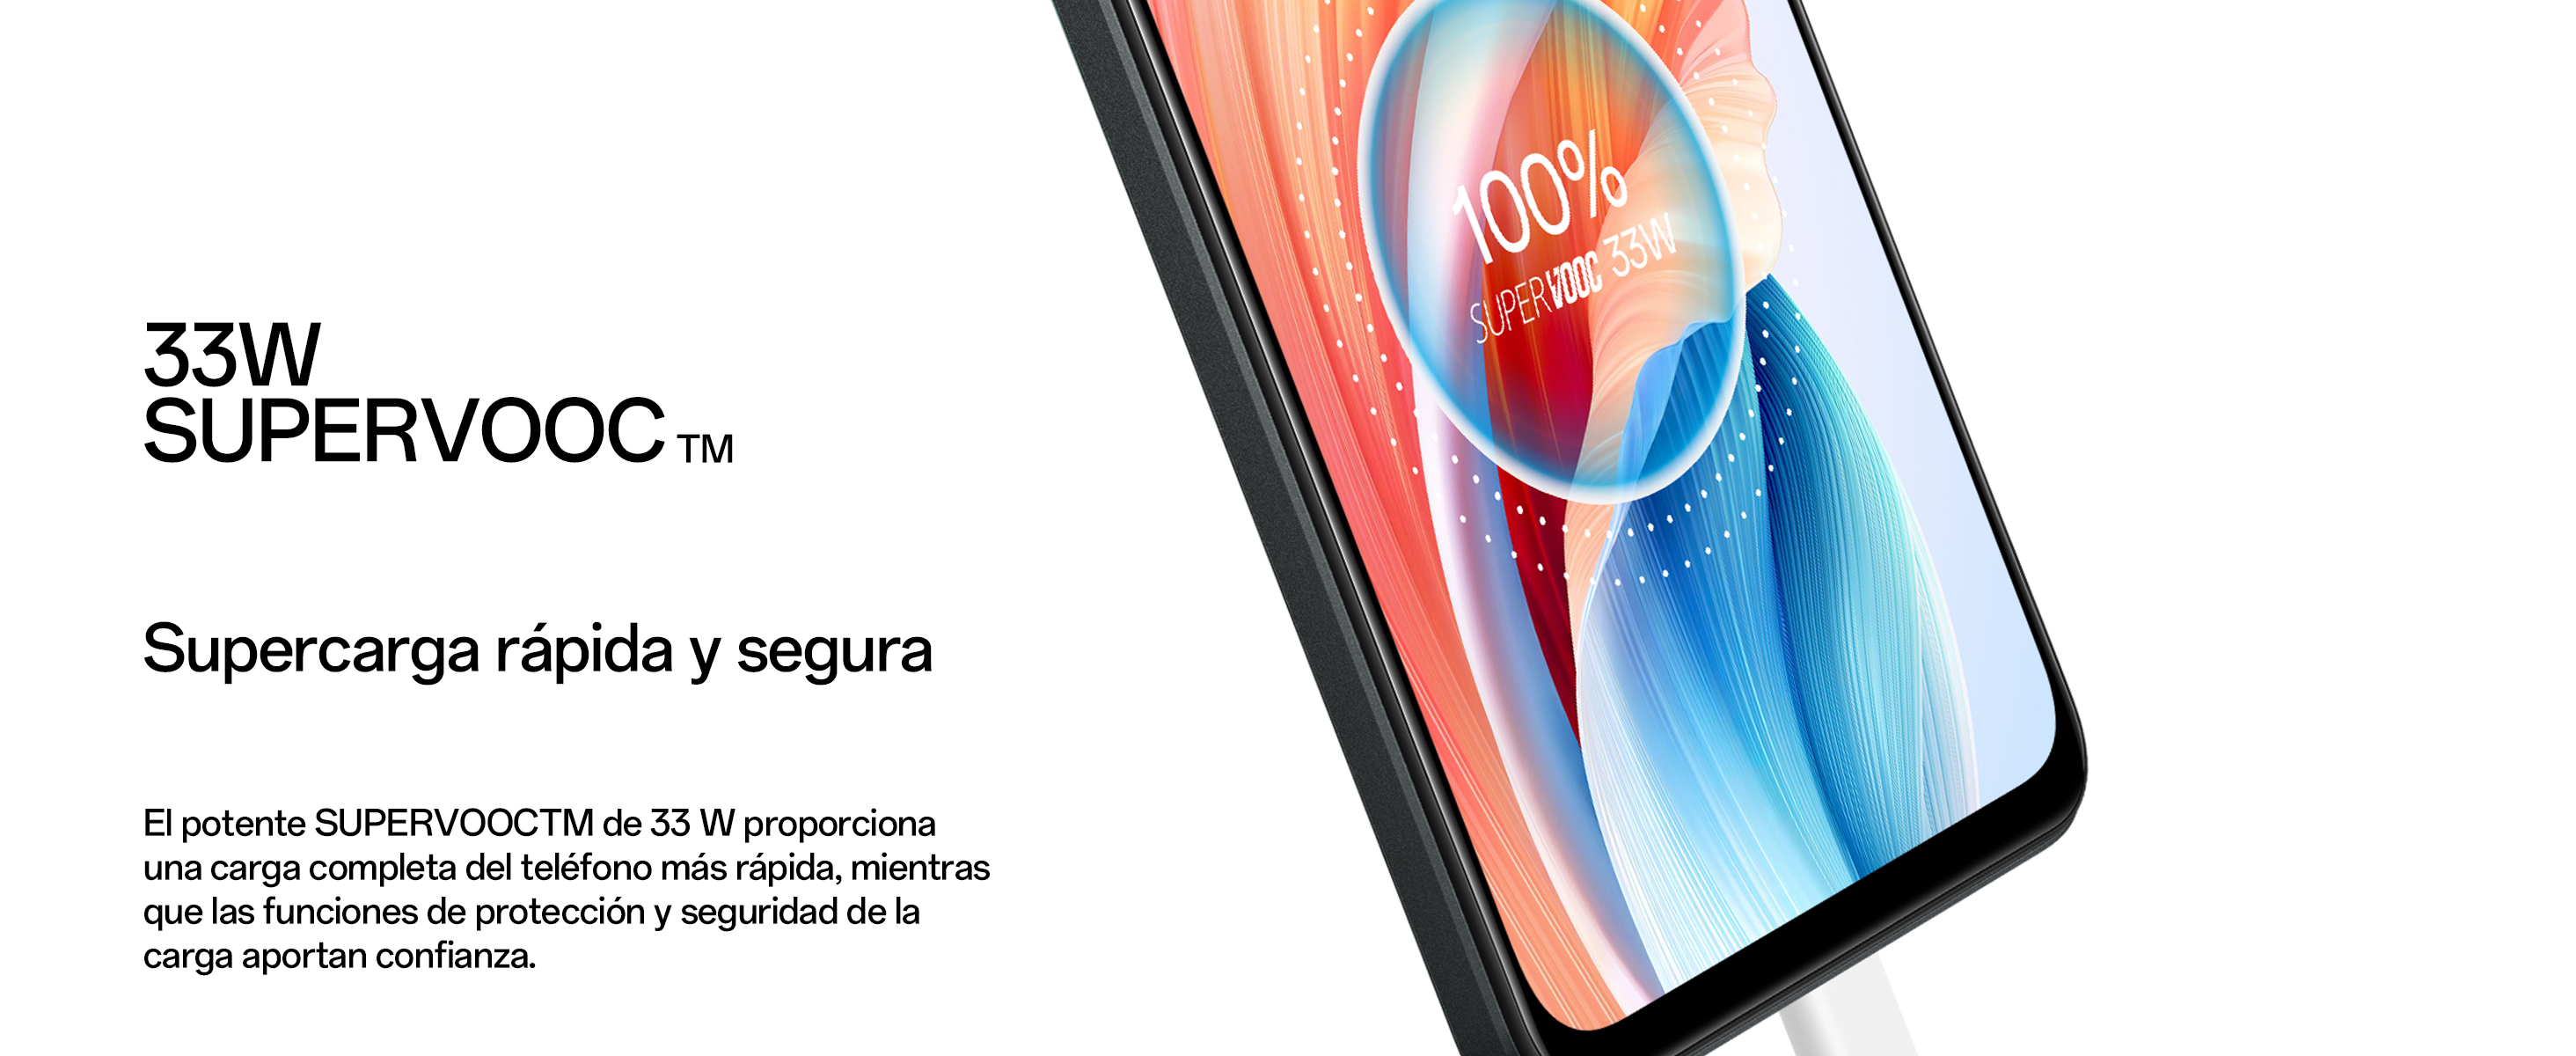 El OPPO A58 llega a España: su nuevo móvil barato destaca por su diseño,  carga rápida y el brillo de su pantalla